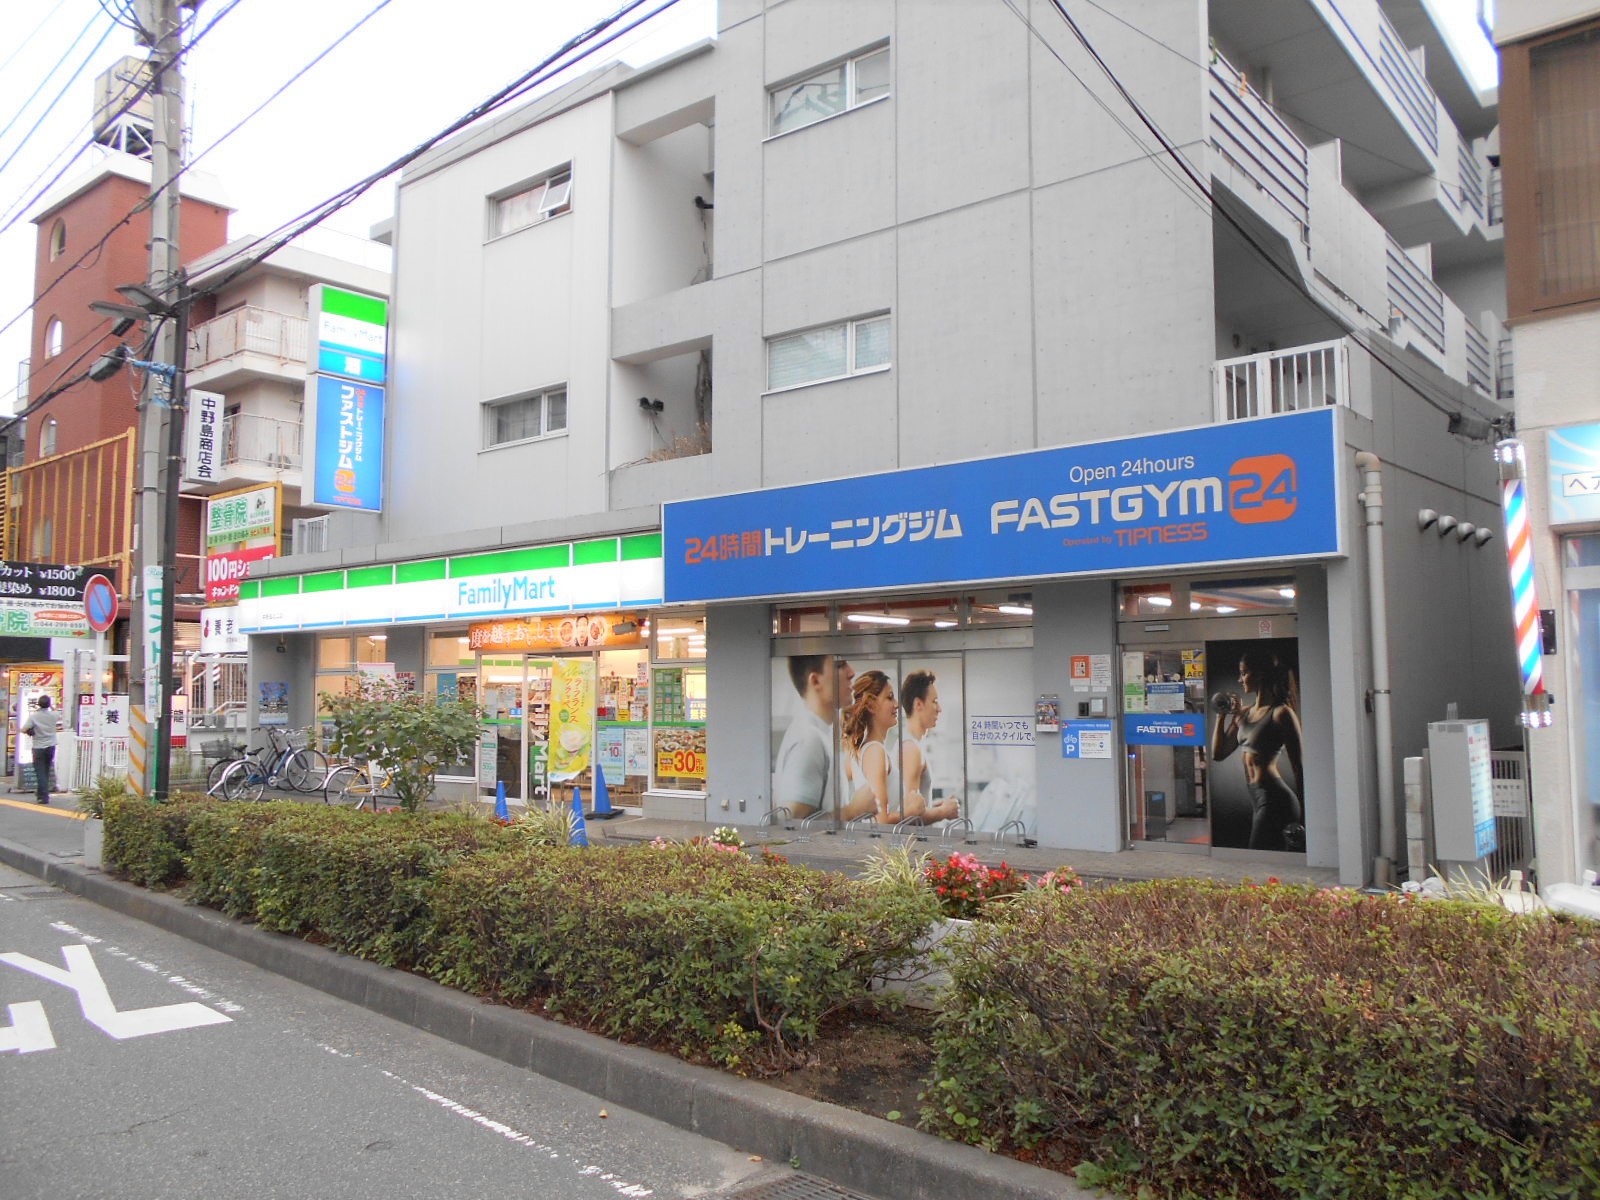 ファストジム24 中野島店の外観